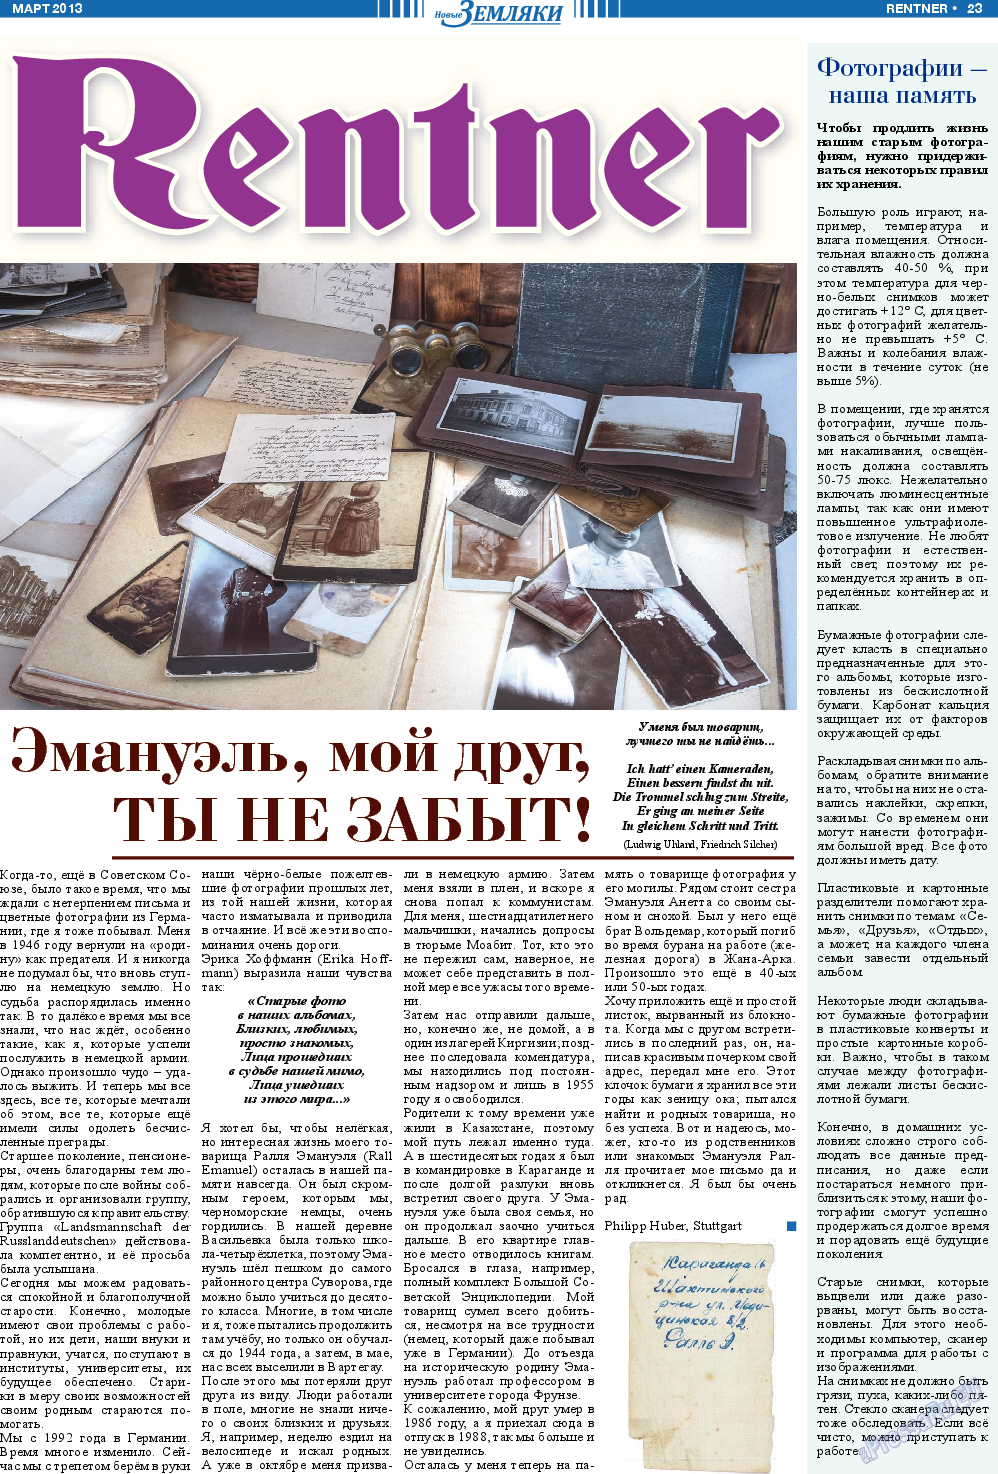 Новые Земляки, газета. 2013 №3 стр.23